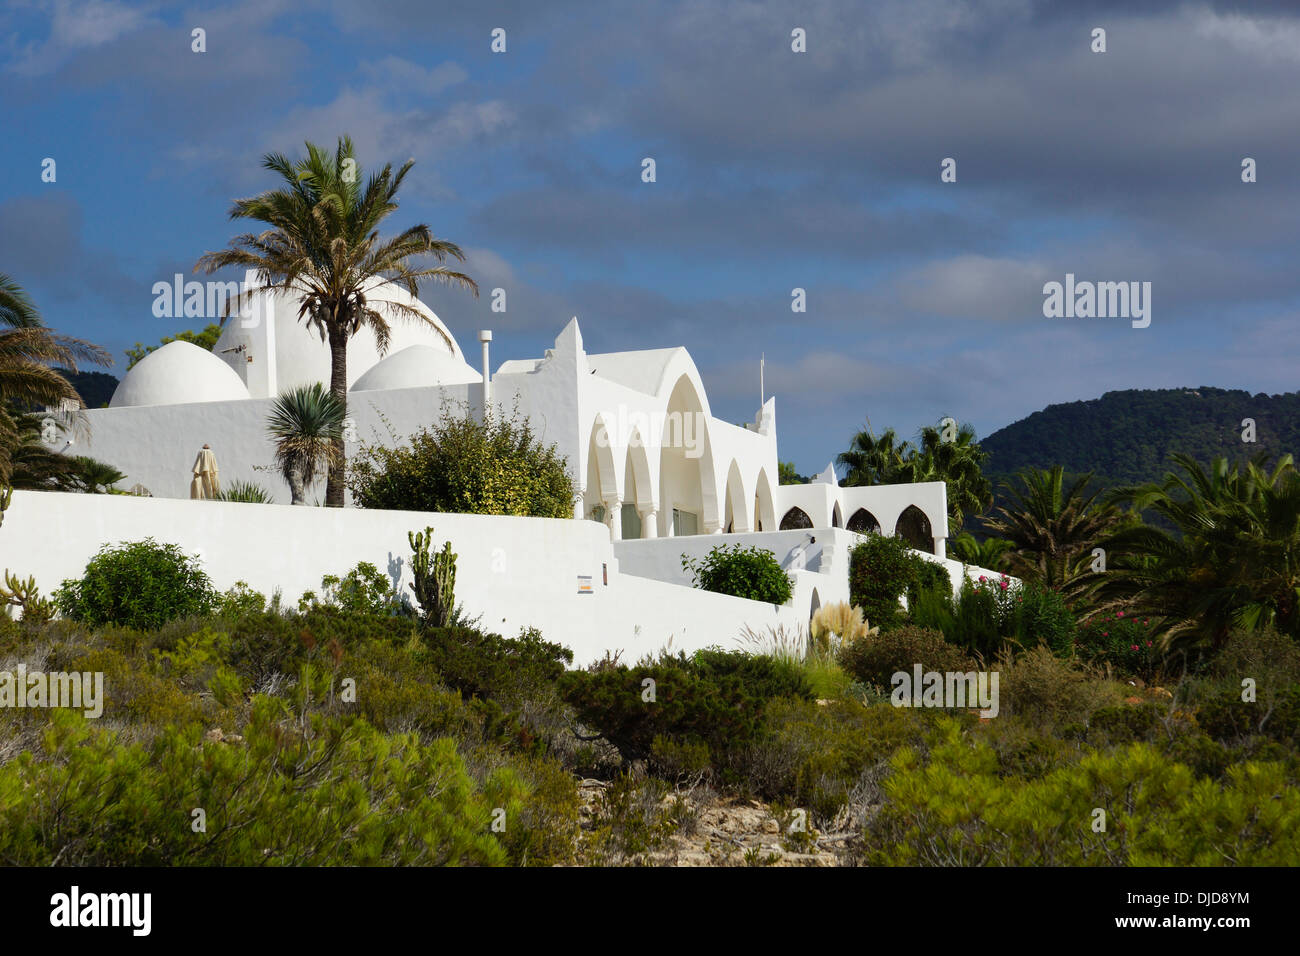 villa in moorish style, cala carbo, ibiza, spain Stock Photo